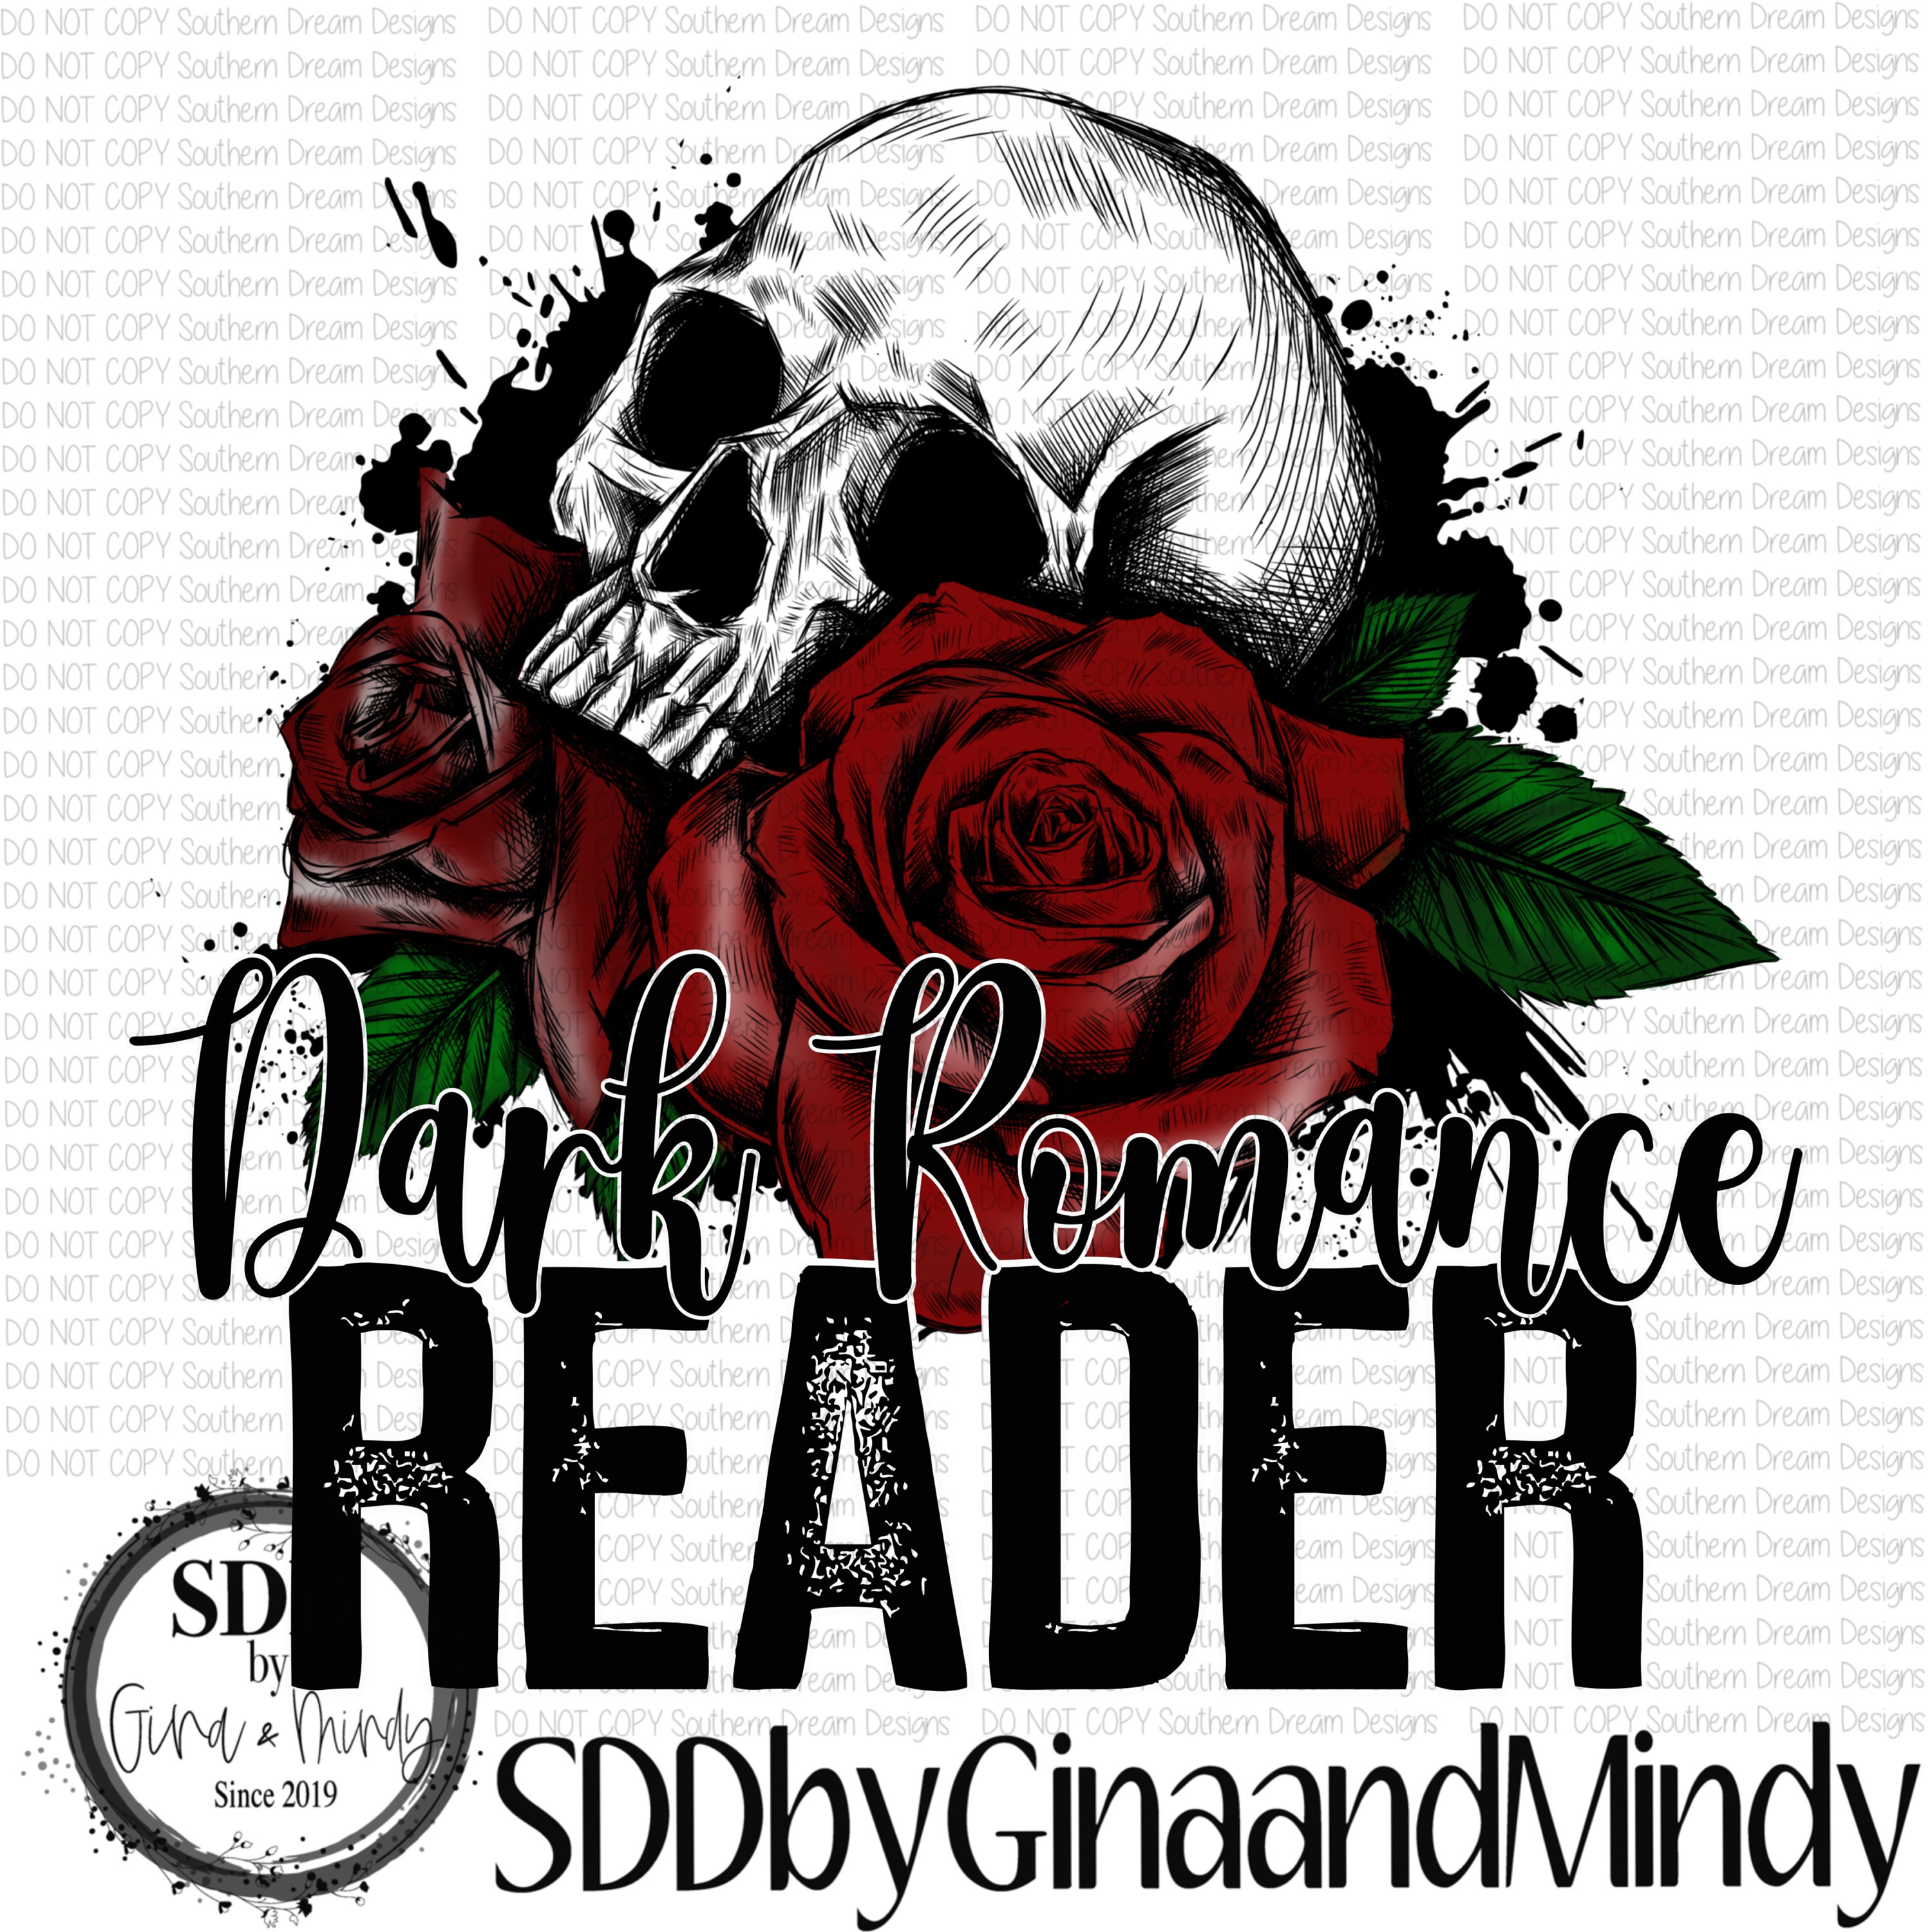 Second Chance Romance Sticker Dark Romance Smut Reader -  Norway